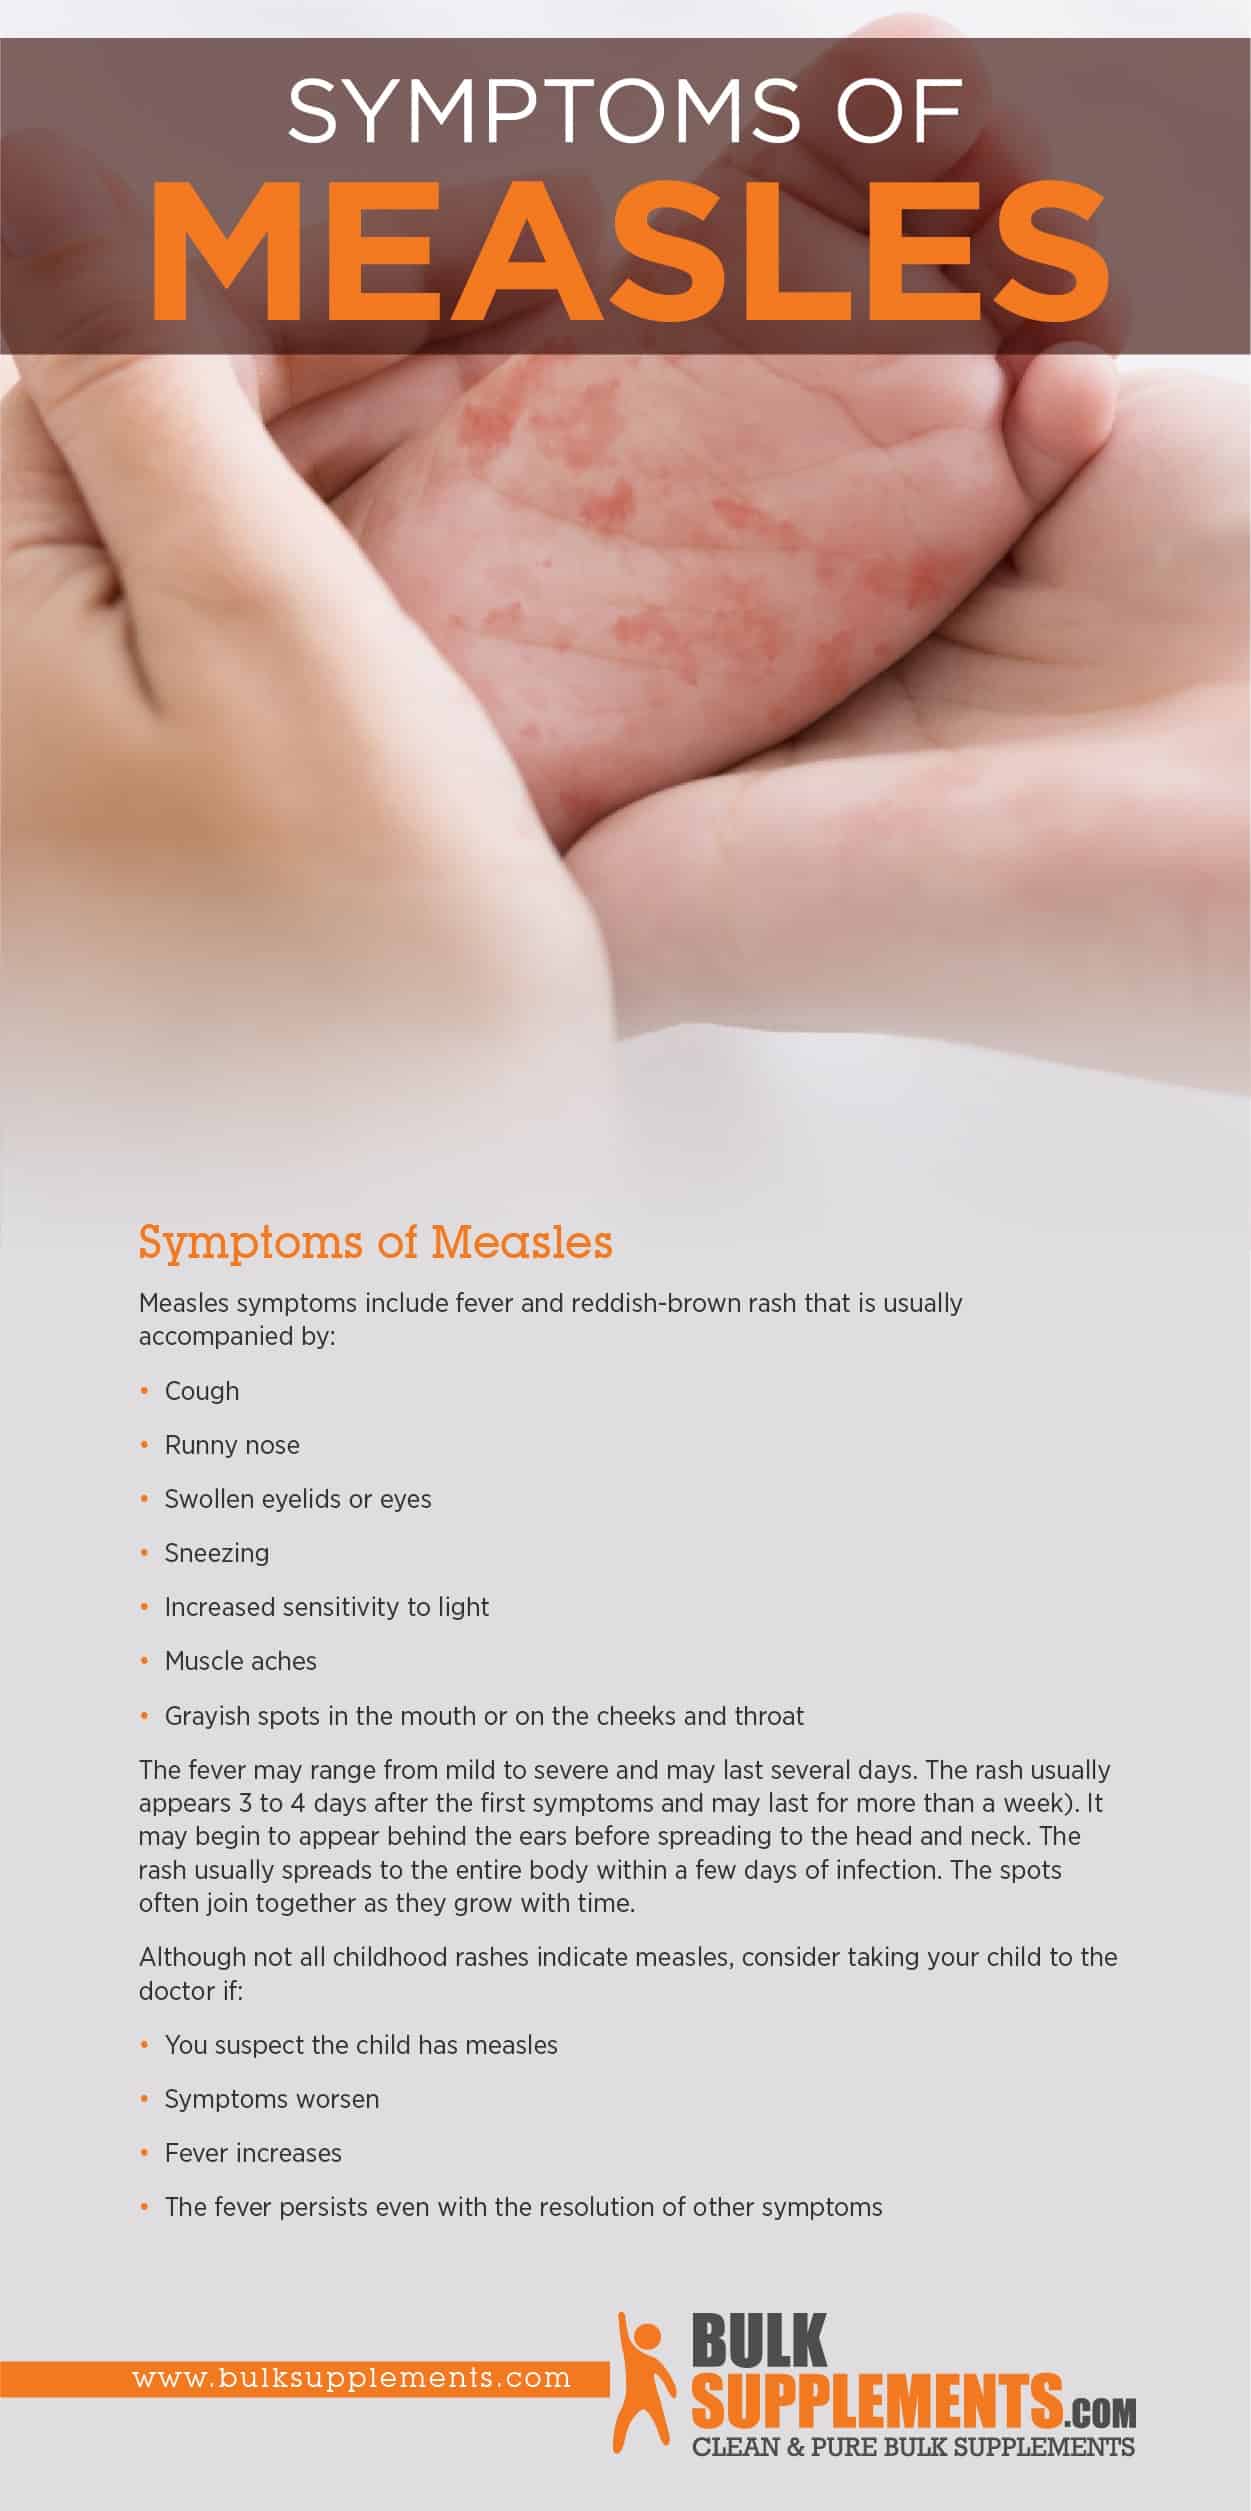 Symptoms of Measles